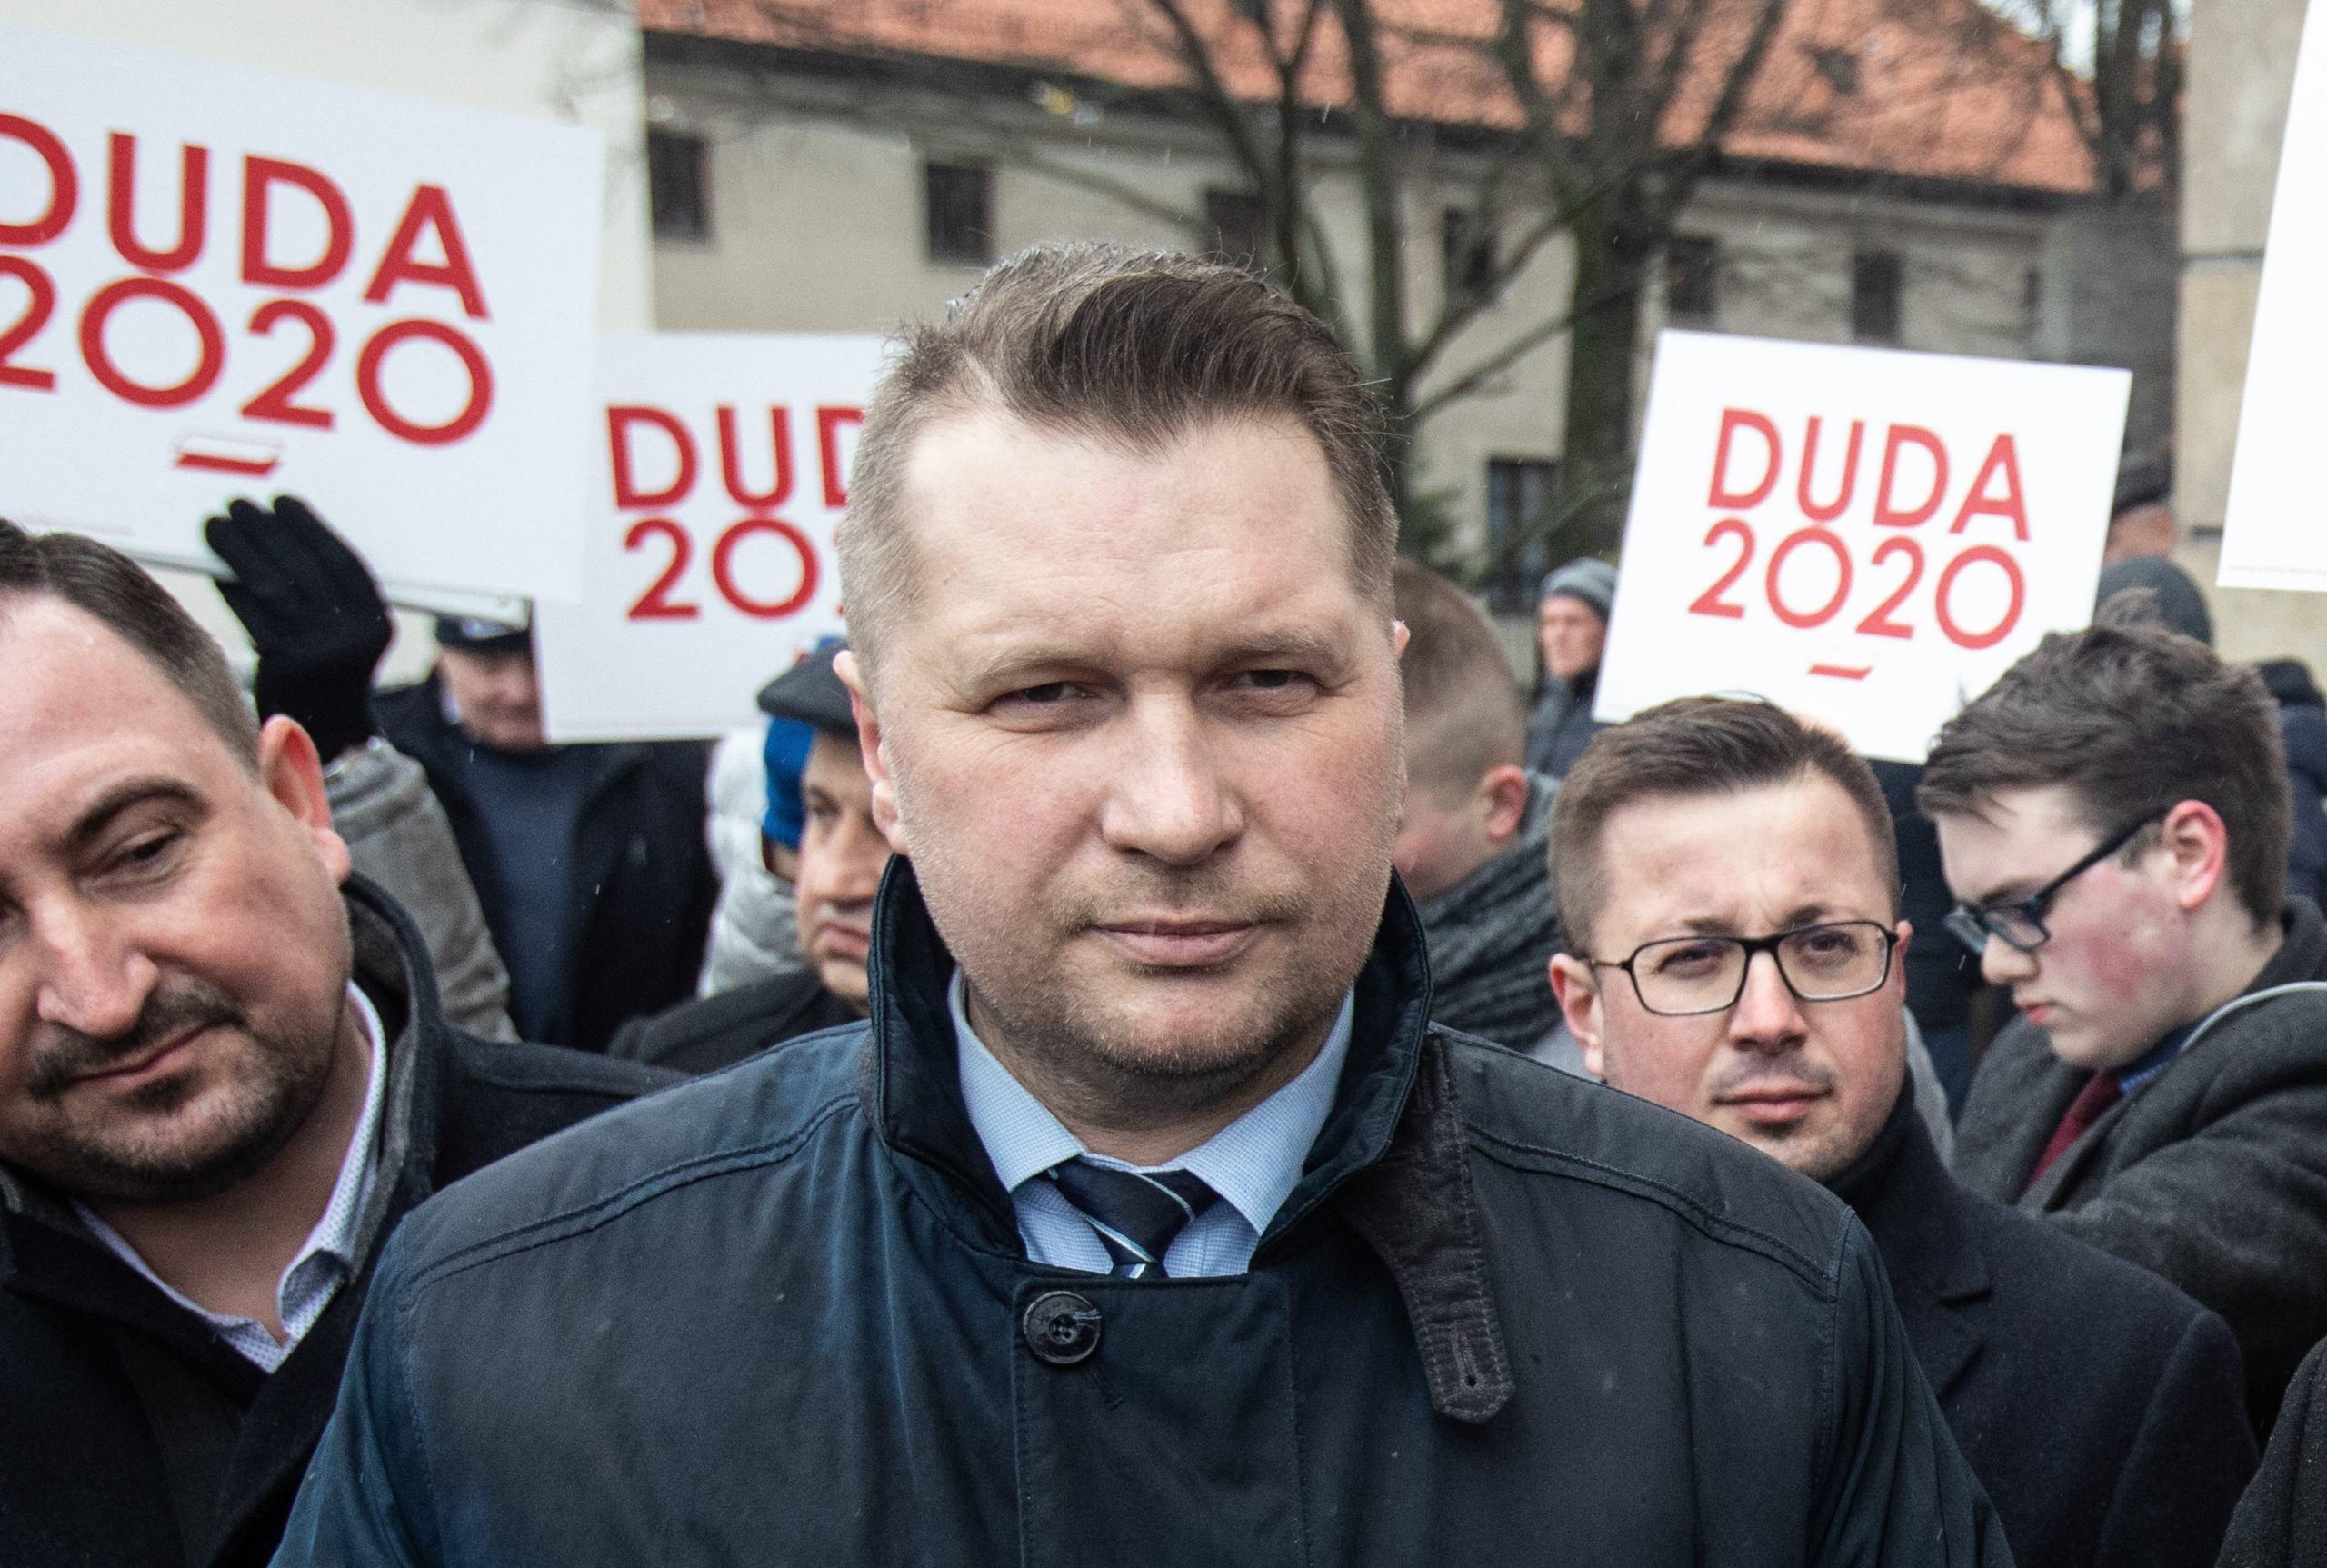 Przemysław Czarnek, za nim bannery z napisem "Duda 2020"